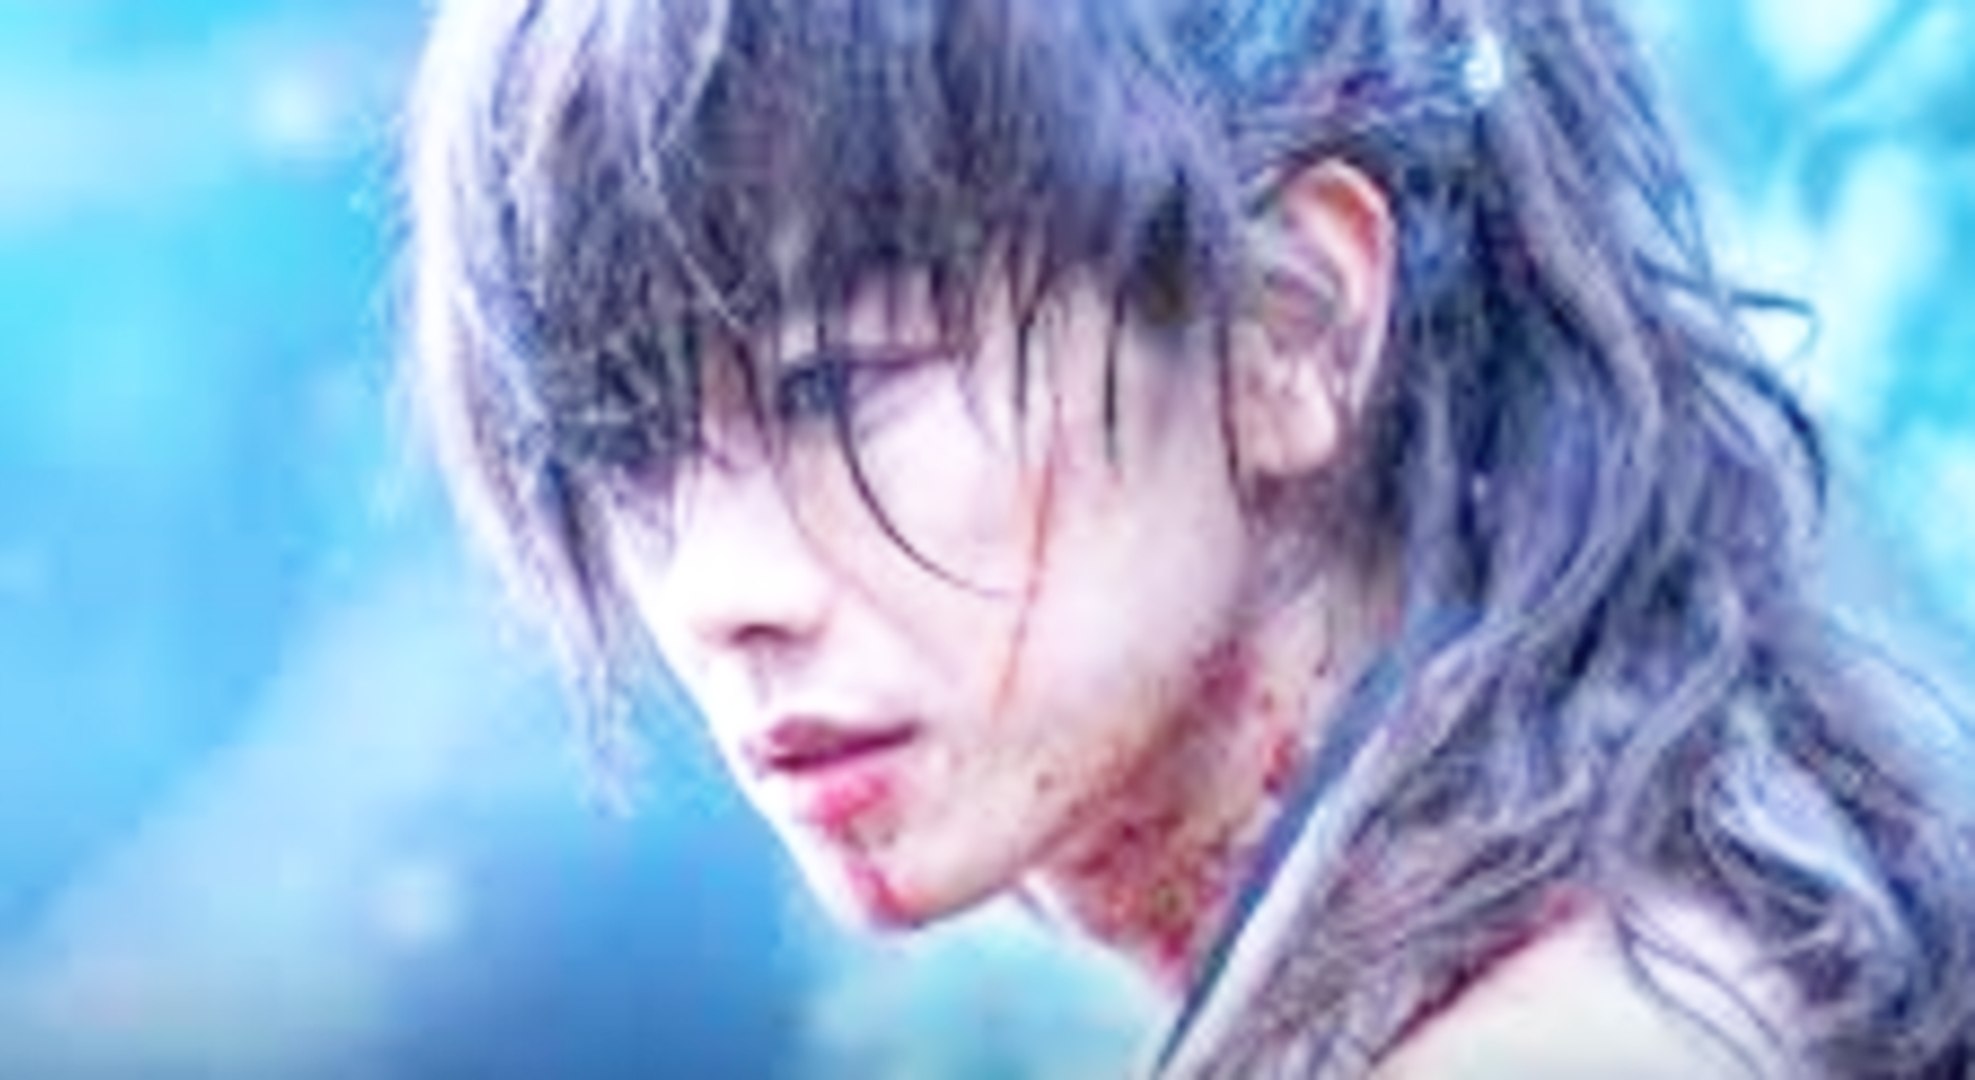 RUROUNI KENSHIN: THE FINAL/THE BEGINNING Official Trailer (2021) Kenshin 4,  Kenshin 5 